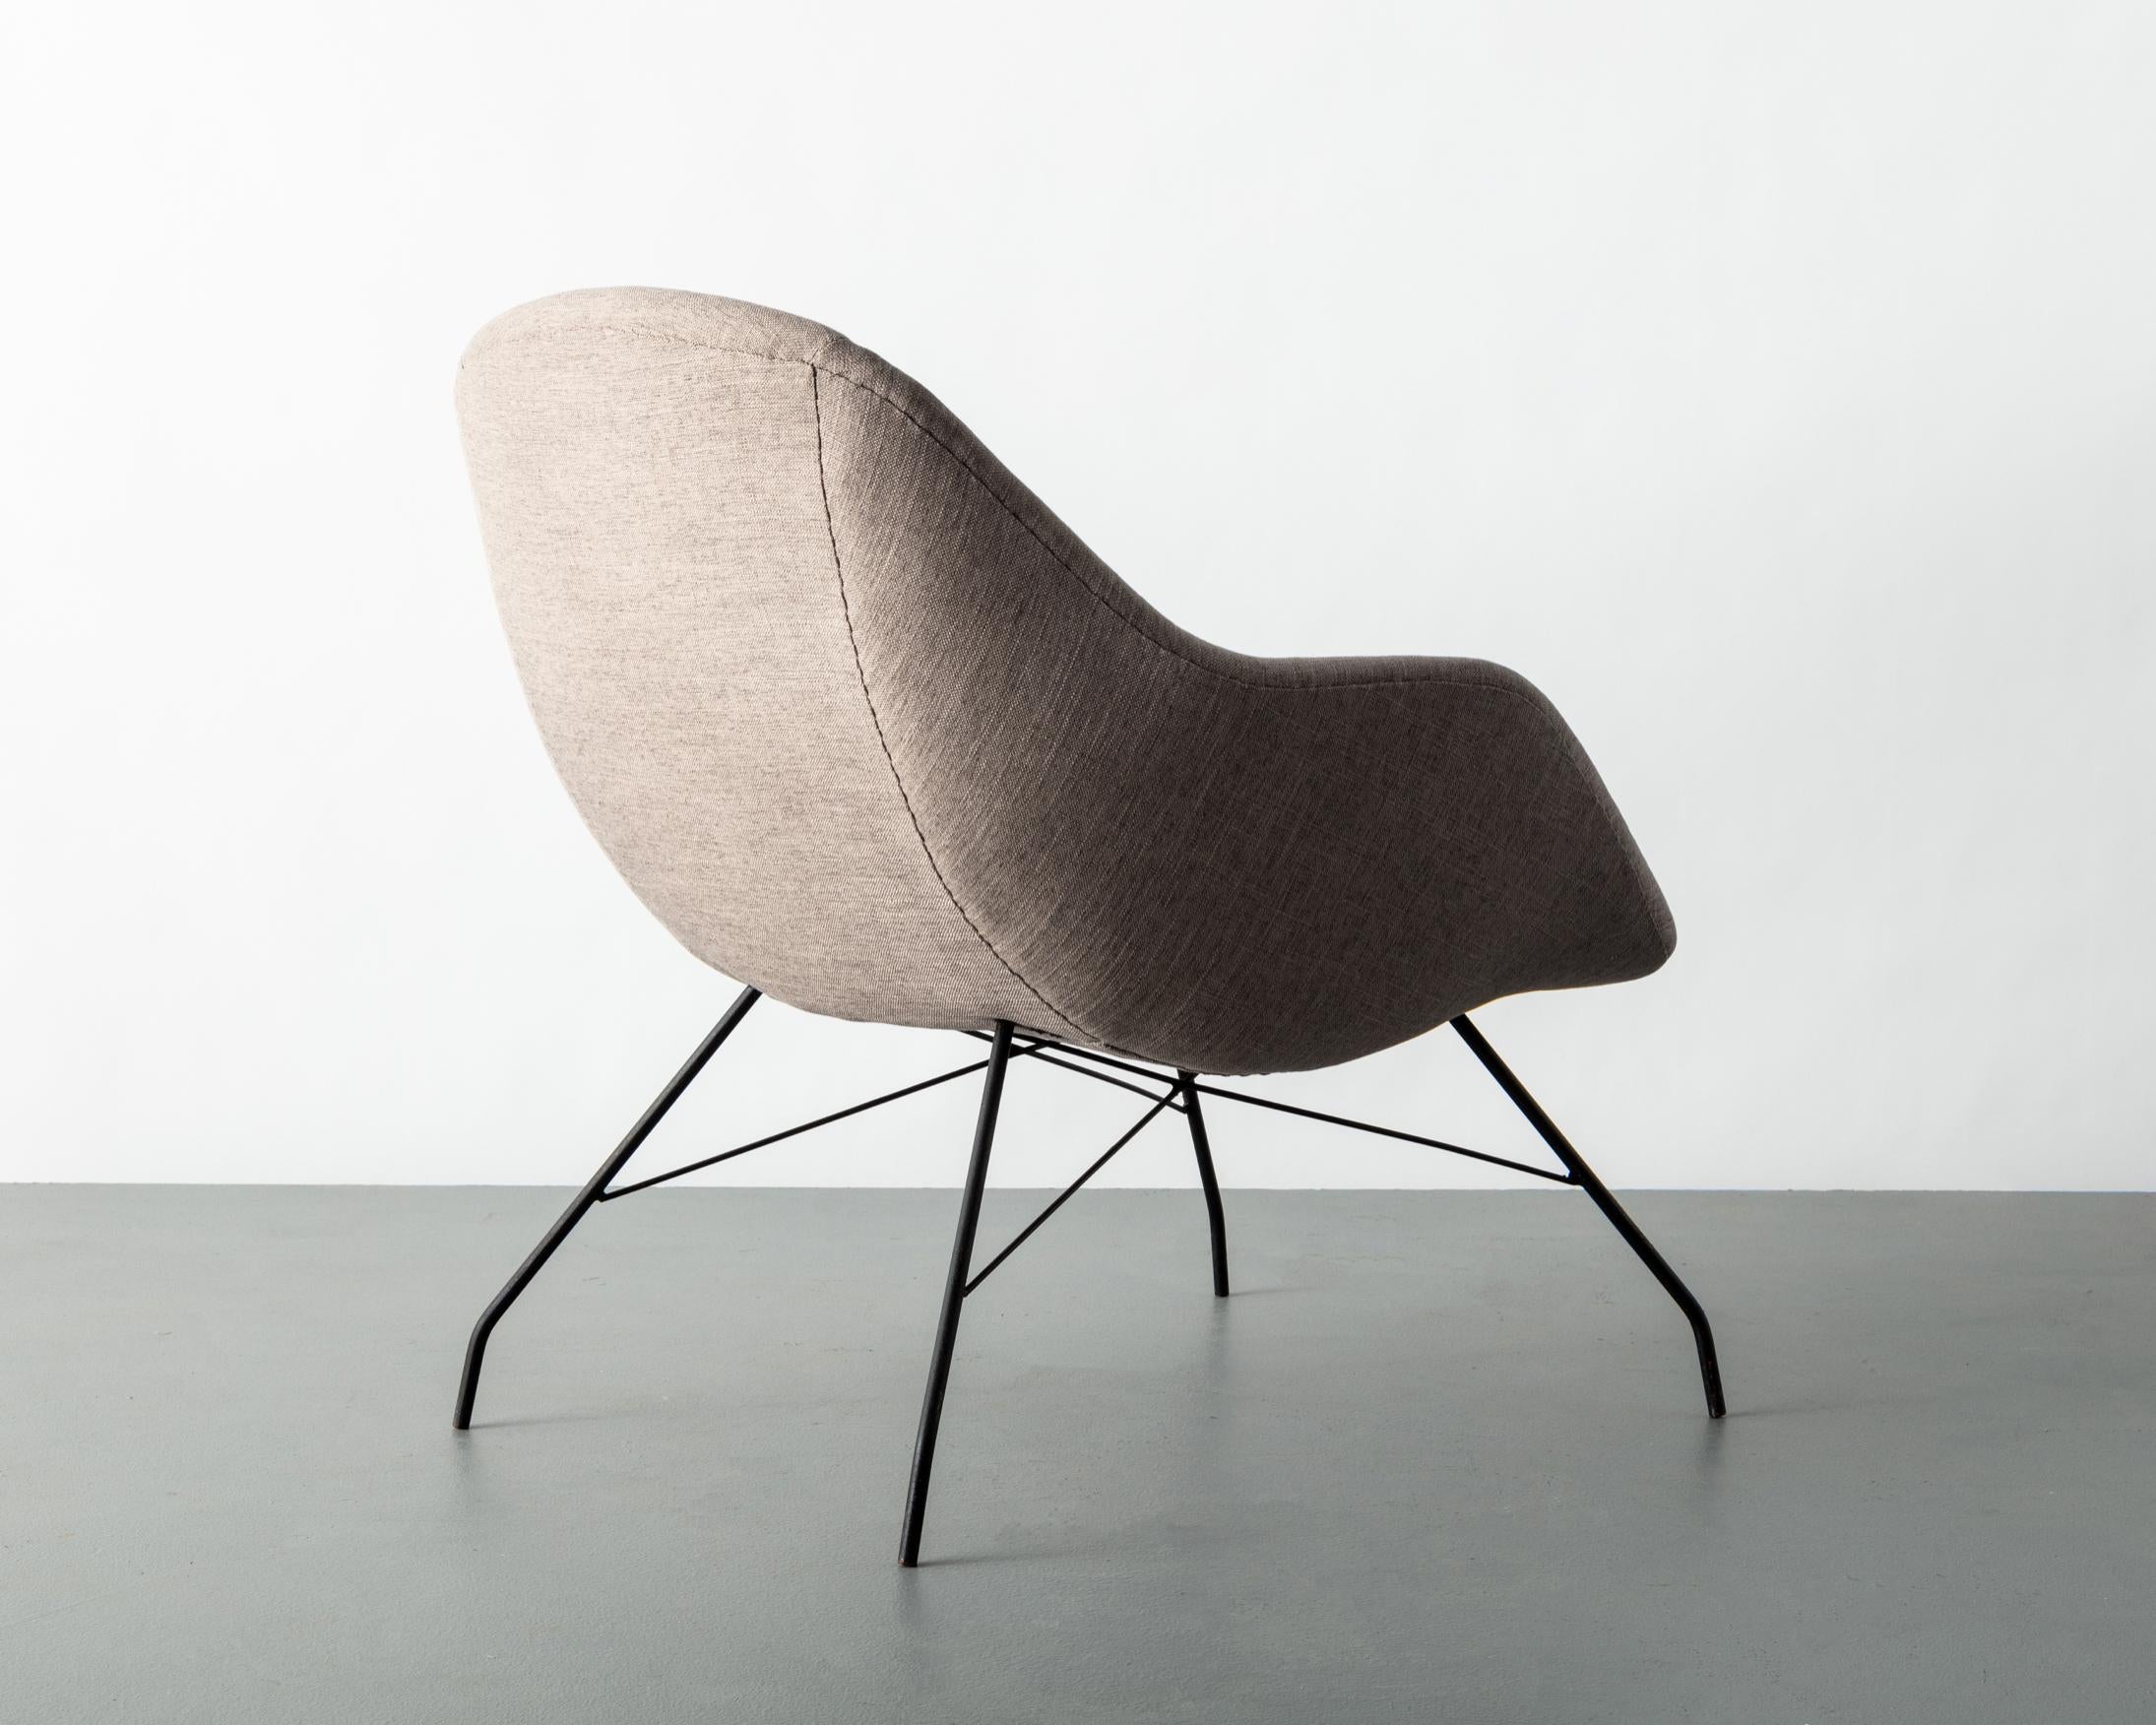 Chaise longue en tissu avec structure en métal. Conçu par Carlo Hauner pour Forma, Brésil, années 1960.